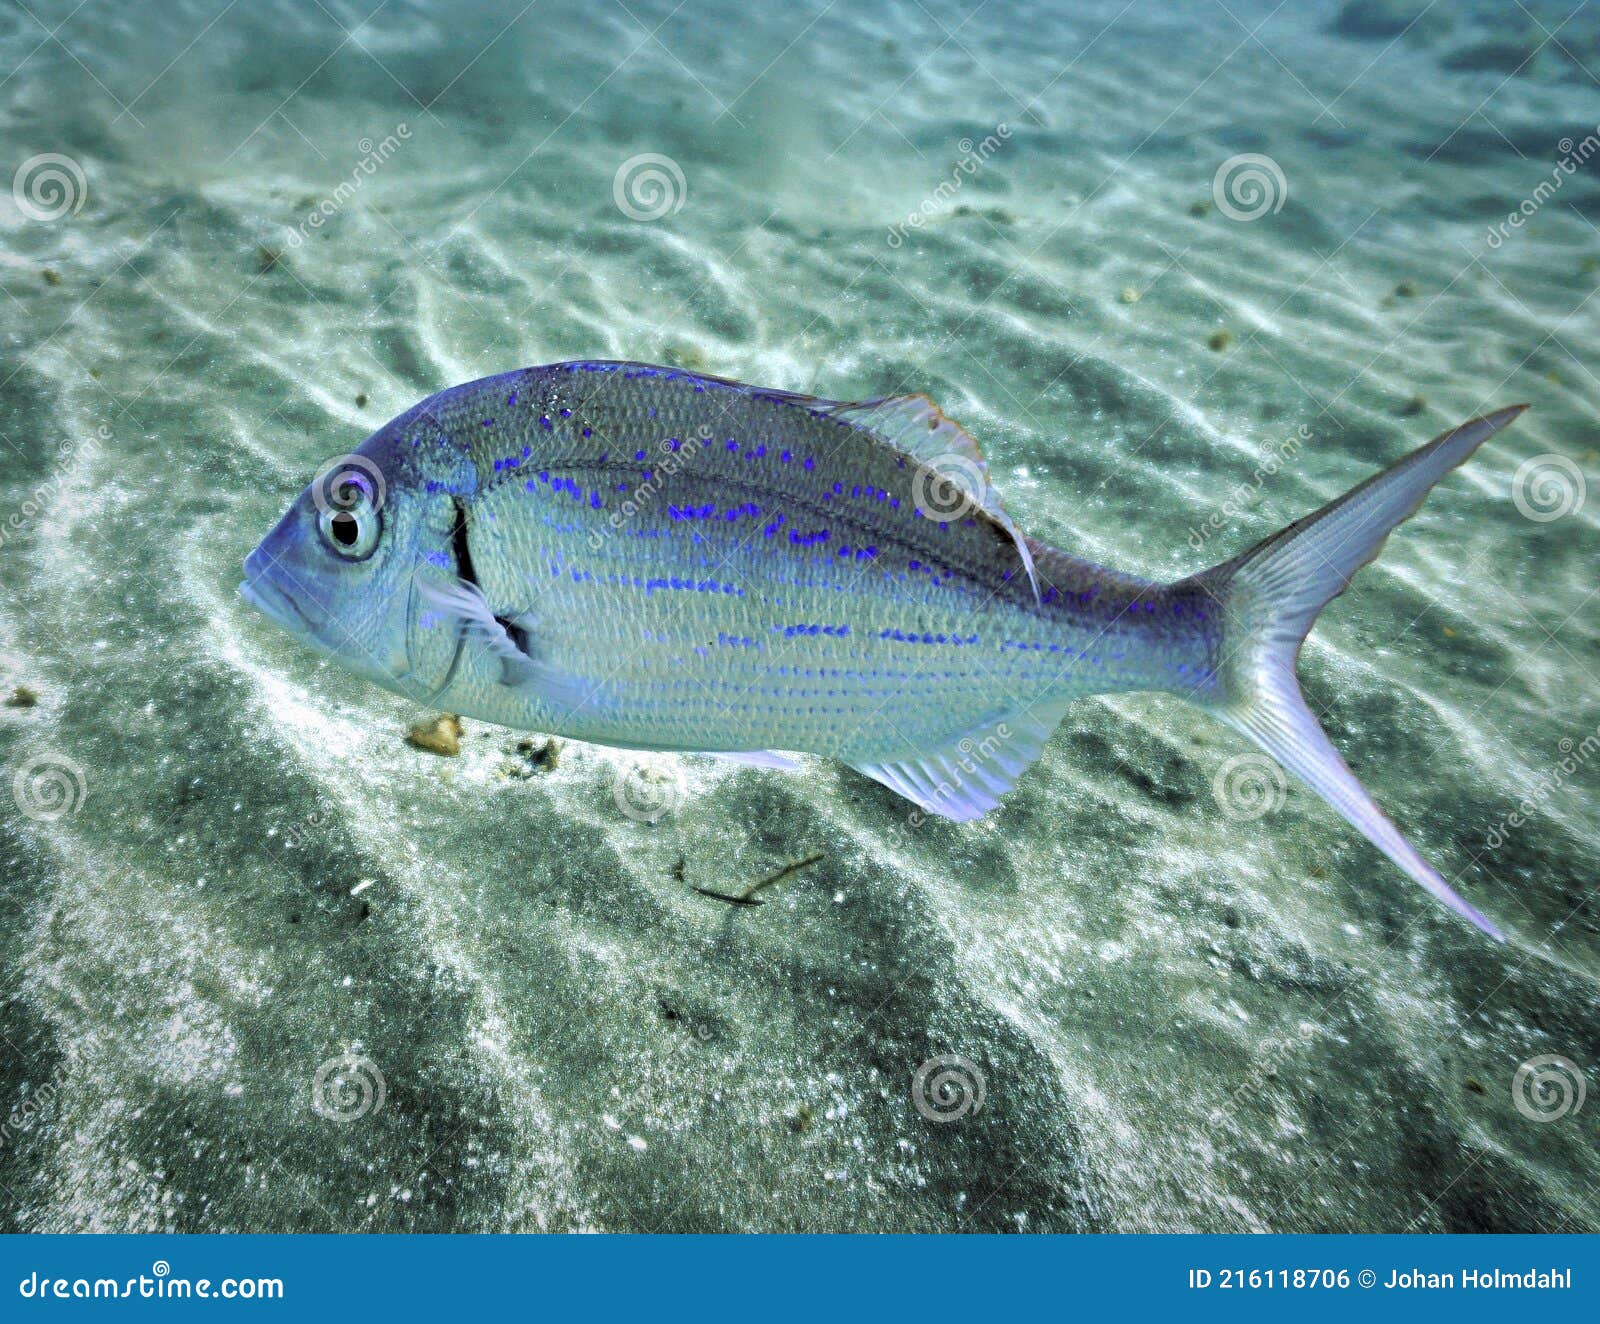 όμορφα θαλασσινά ψάρια στο βυθό της θάλασσας Στοκ Εικόνες - εικόνα από  aquitaine: 216118706